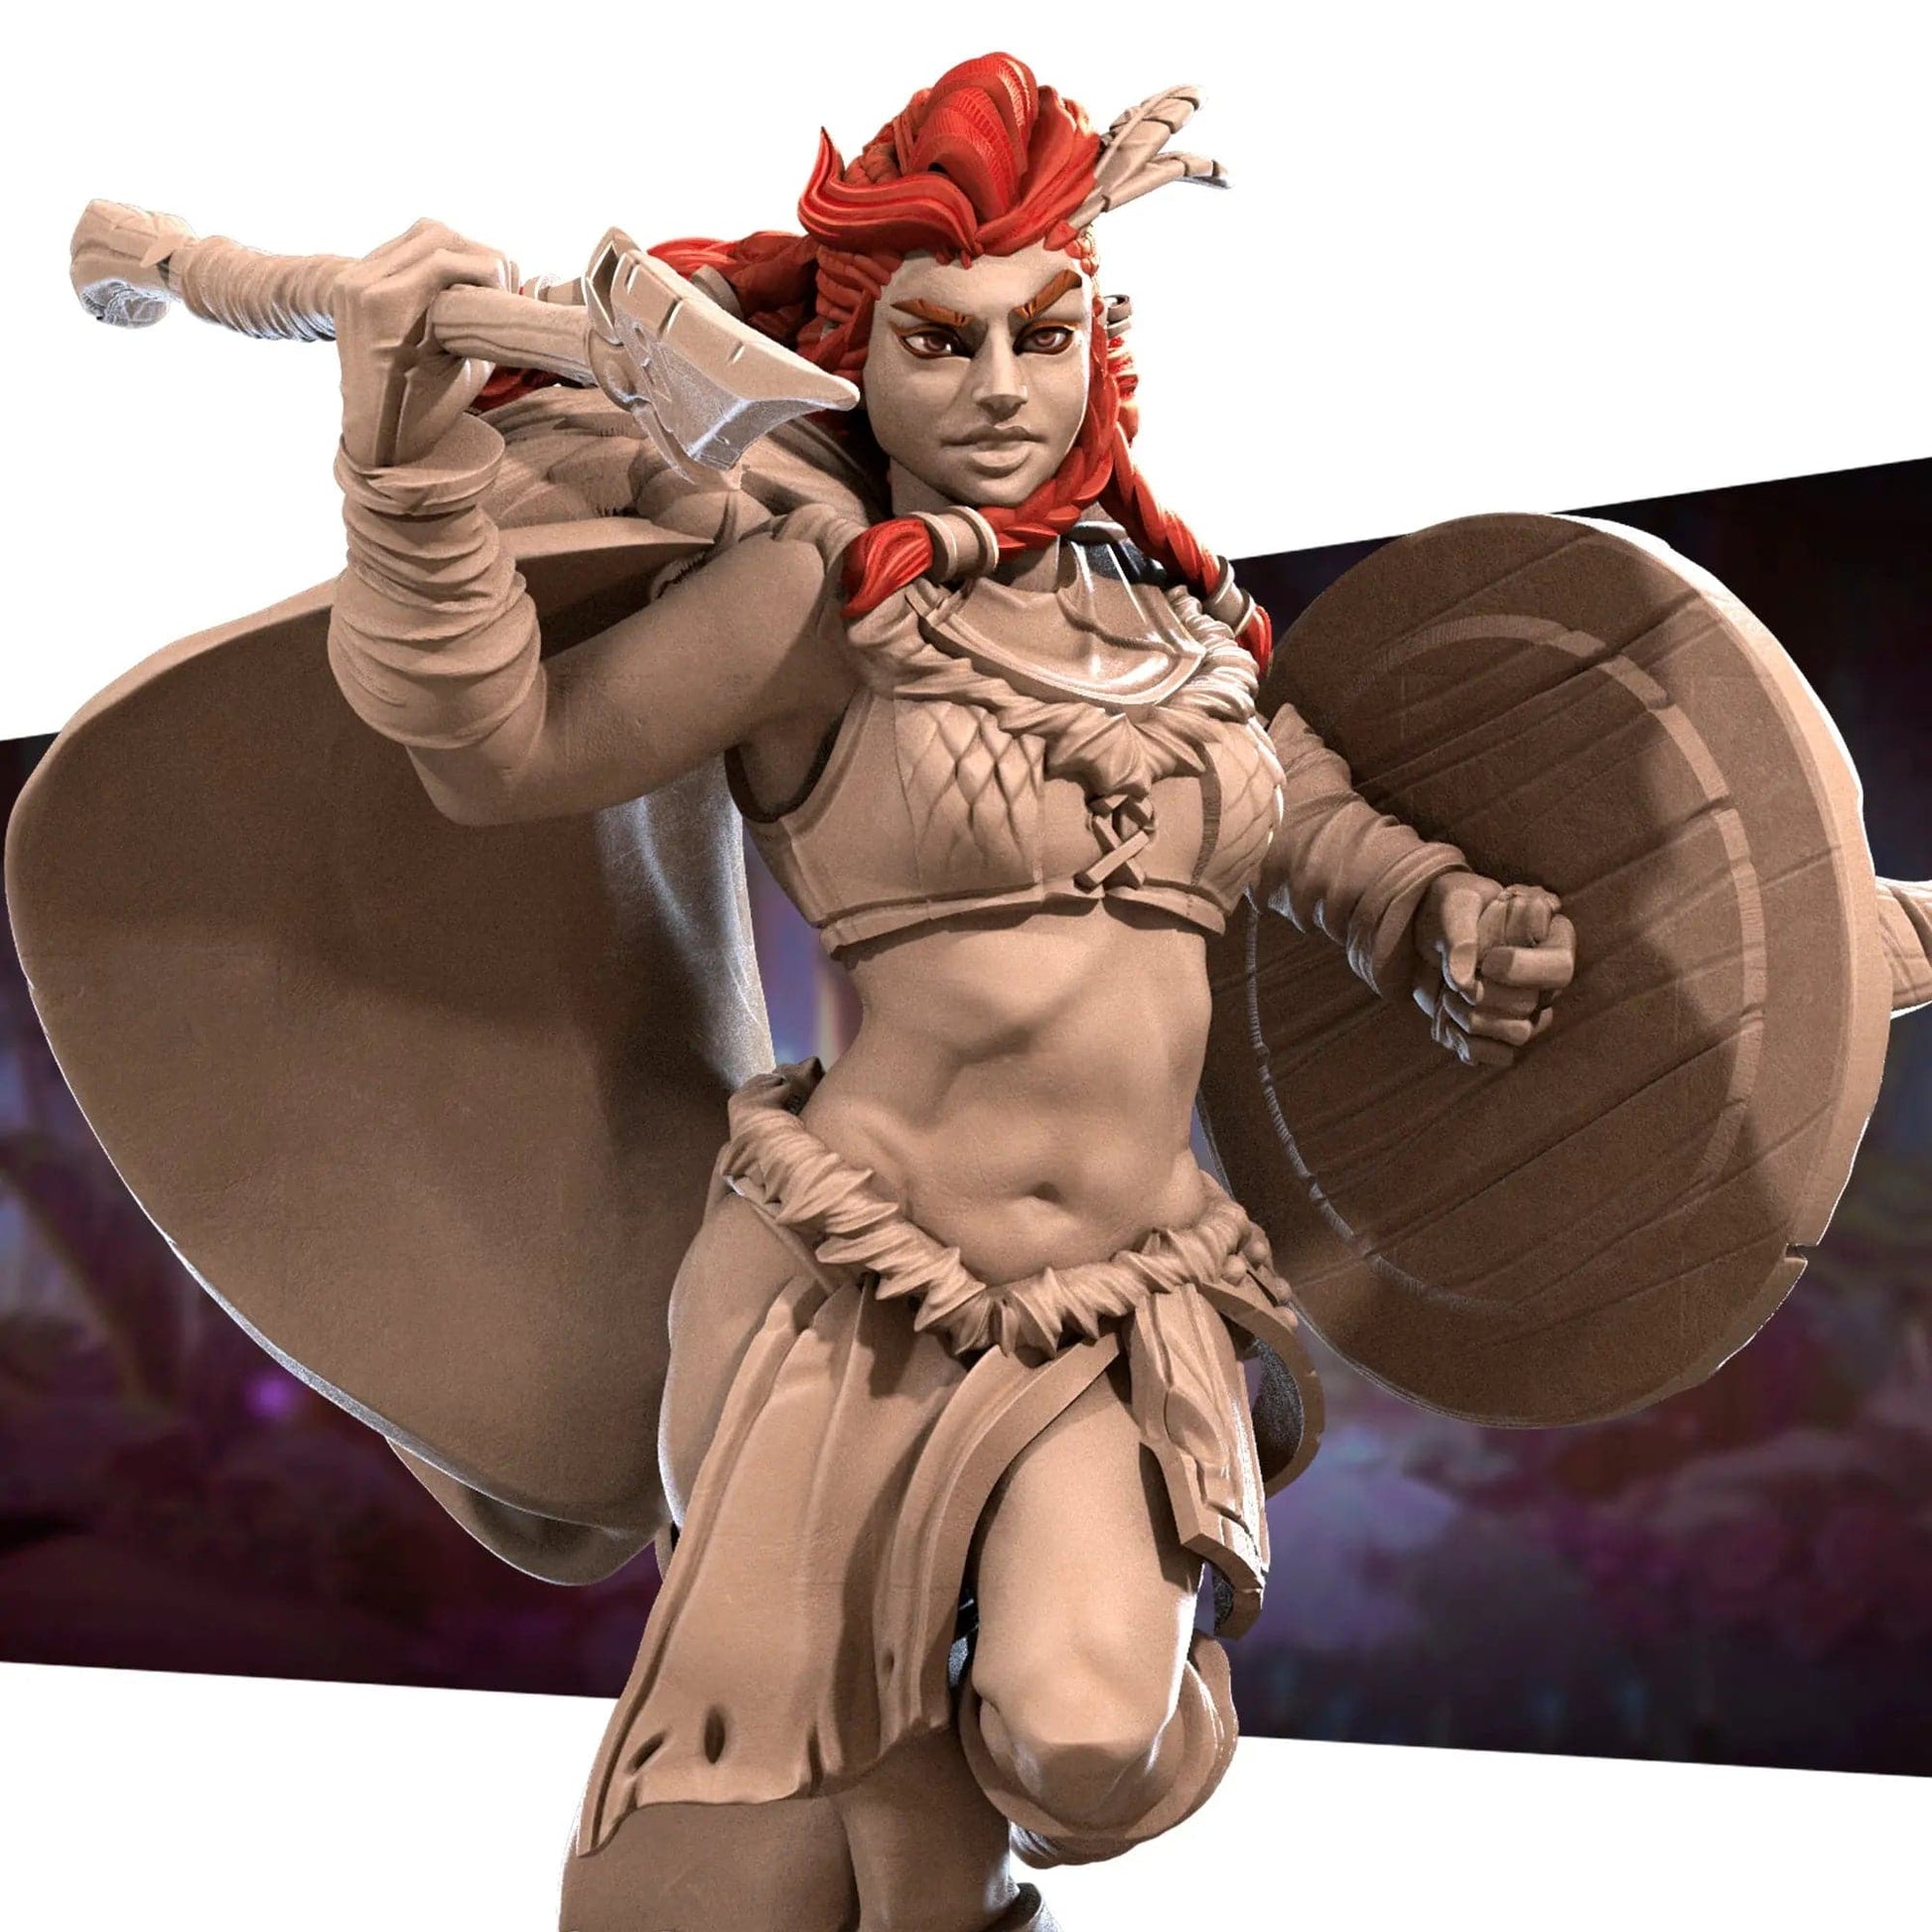 Chief Anira, Warrior Barbarian Queen Running | D&D Miniature TTRPG Character | Bite the Bullet - Tattles Told 3D